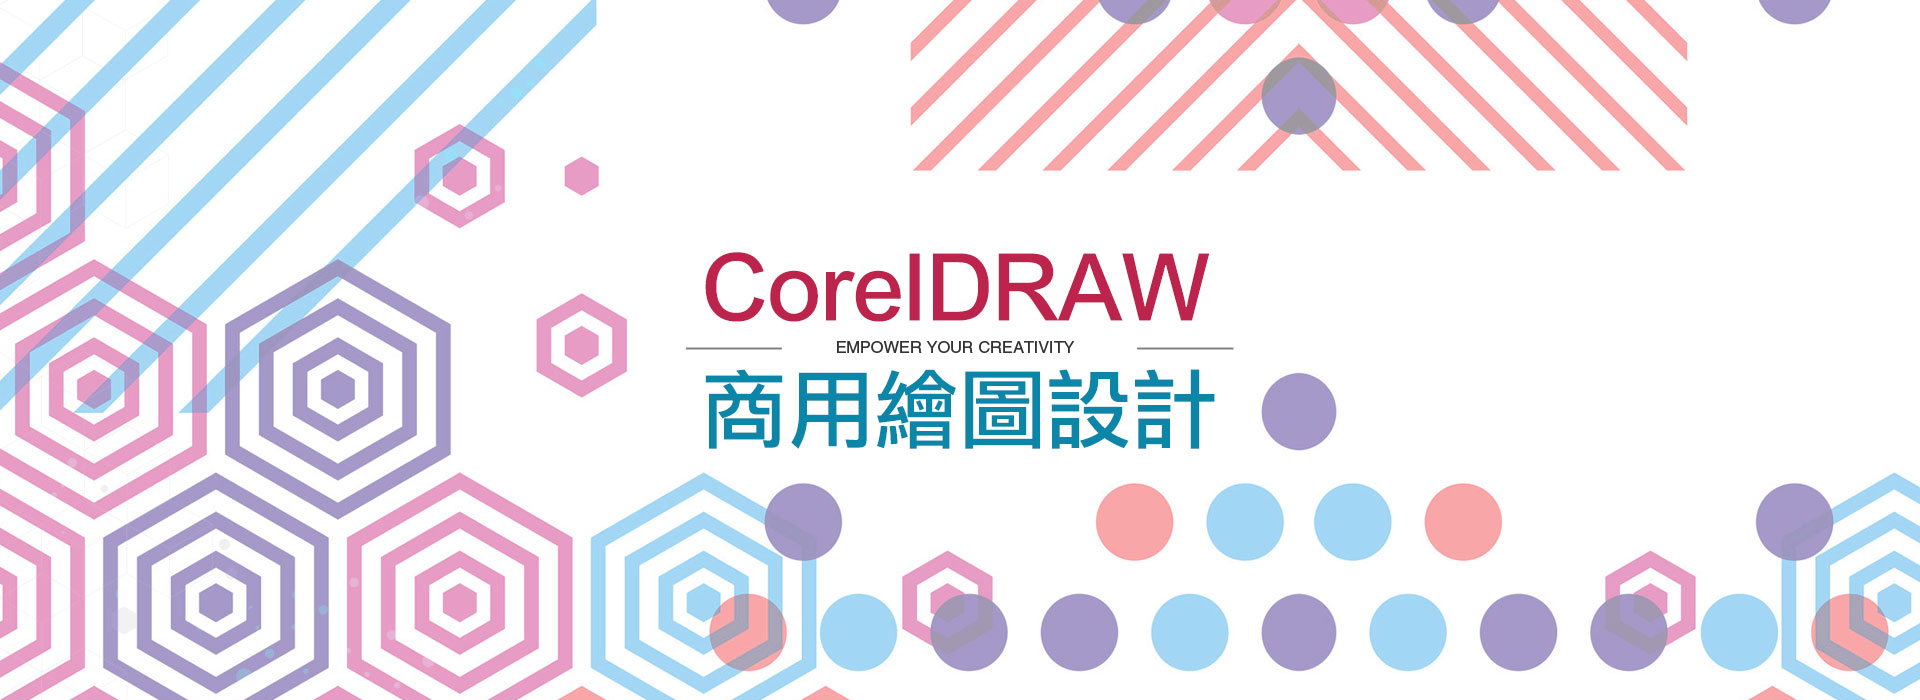 CorelDRAW 商用繪圖設計